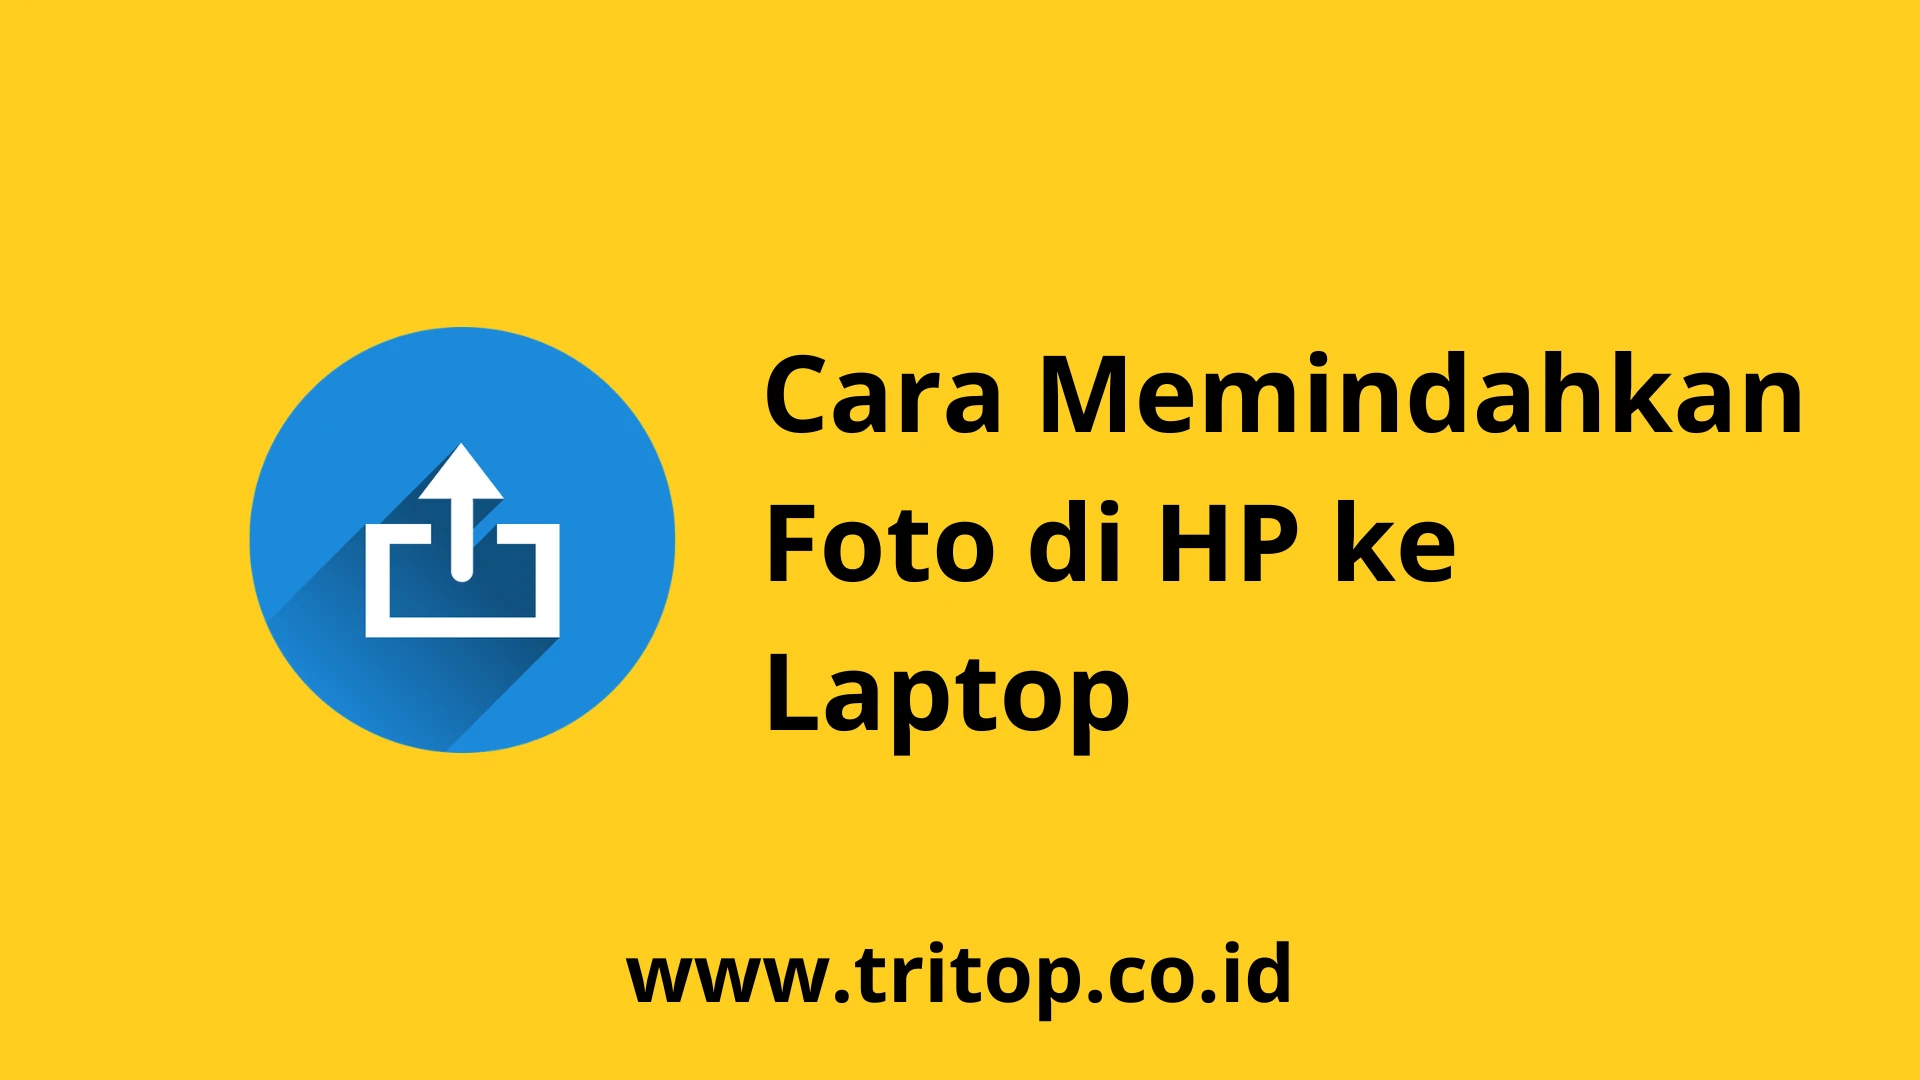 Cara Memindahkan Foto di HP ke Laptop Tritop.co.id~1